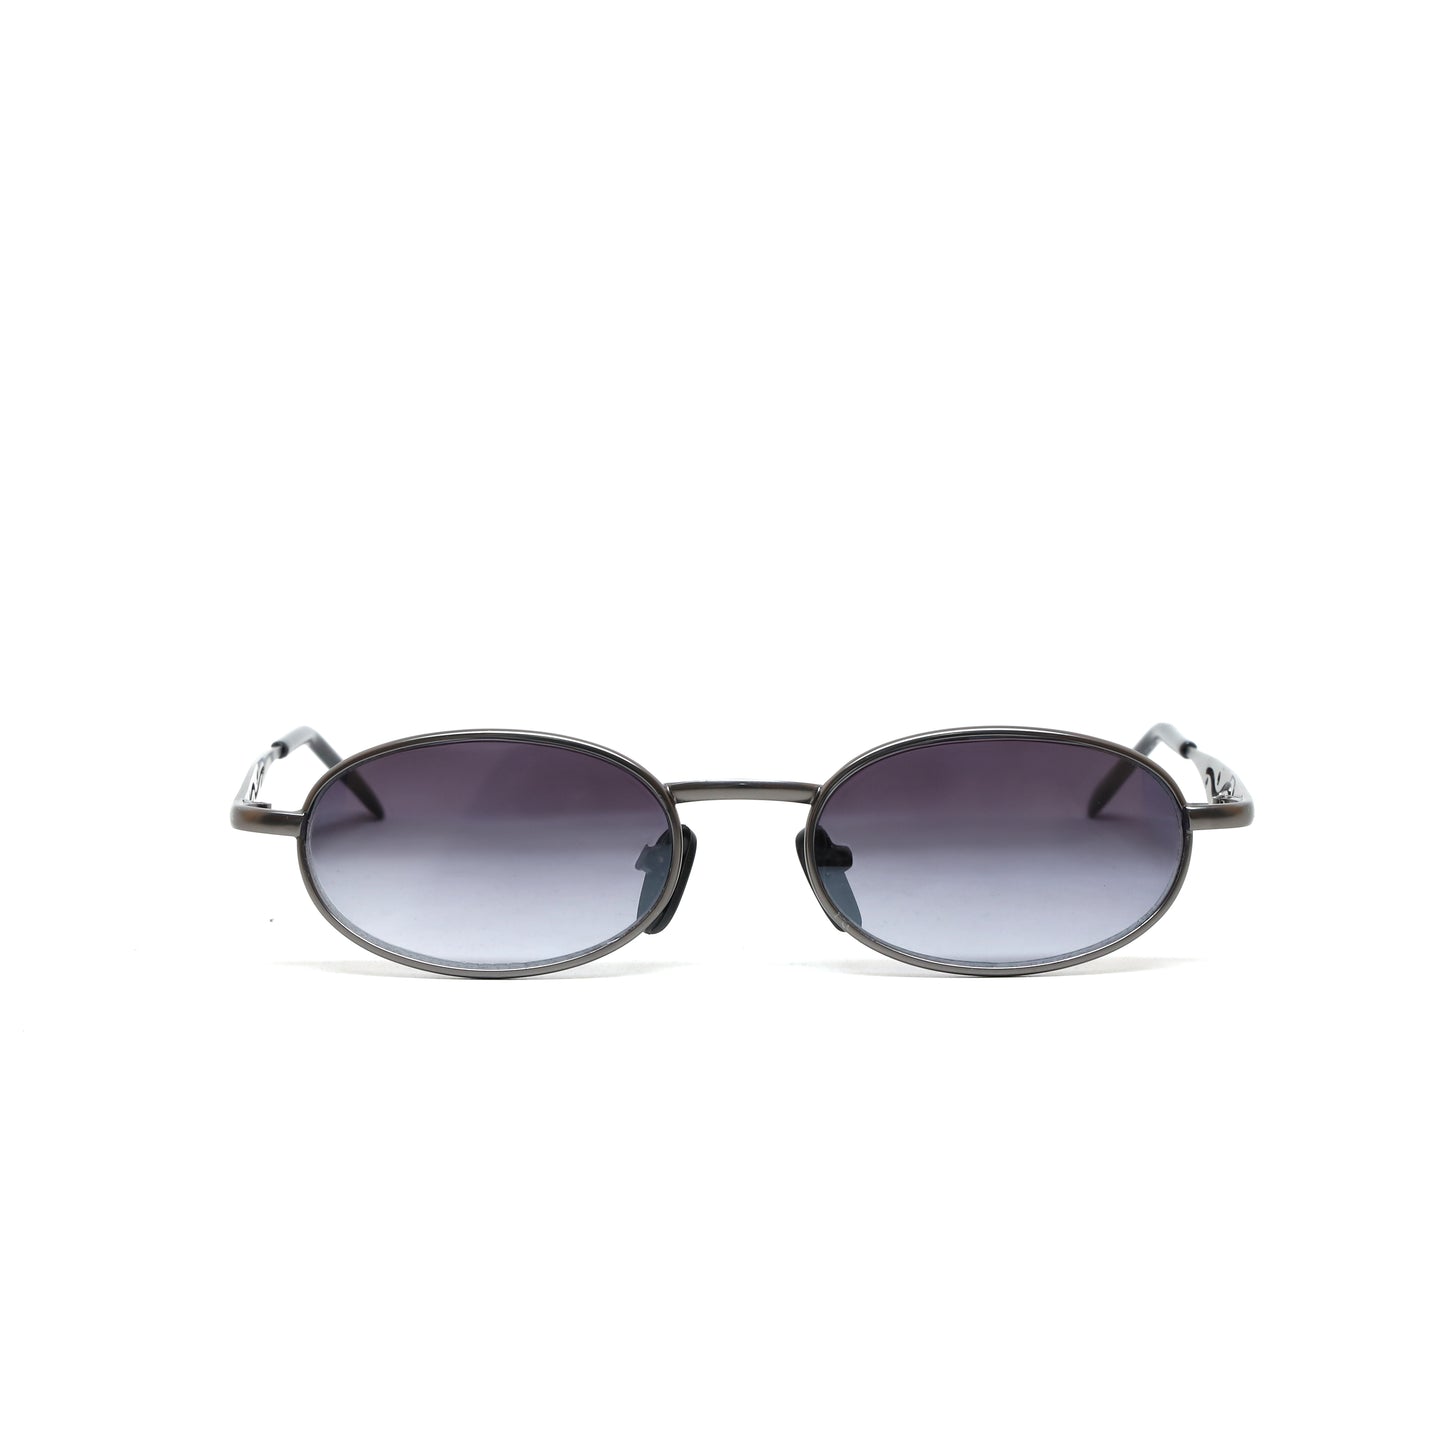 Small Size Mini 90s Deadstock Santa Fe Oval Sunglasses - Silver